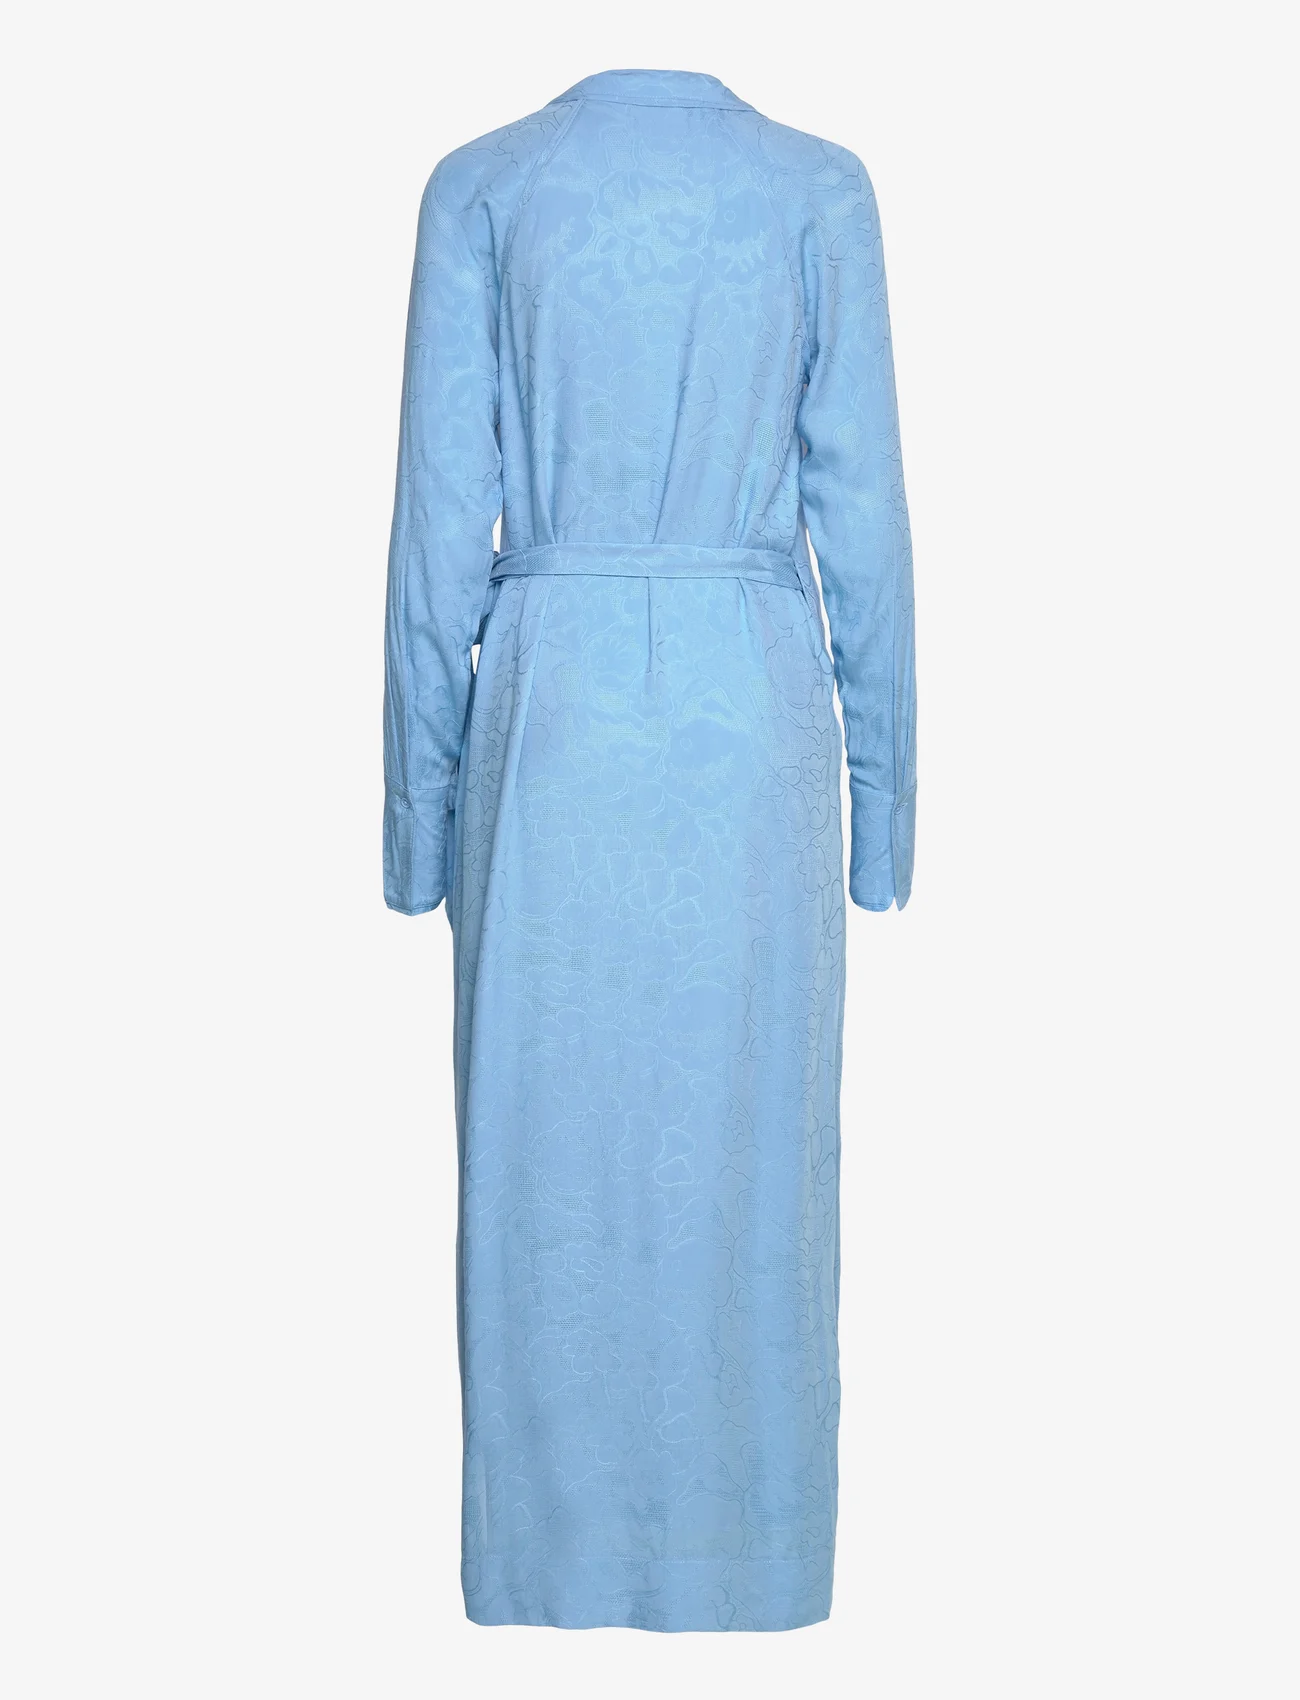 HOLZWEILER - Wander Dress - omlottklänningar - blue - 1